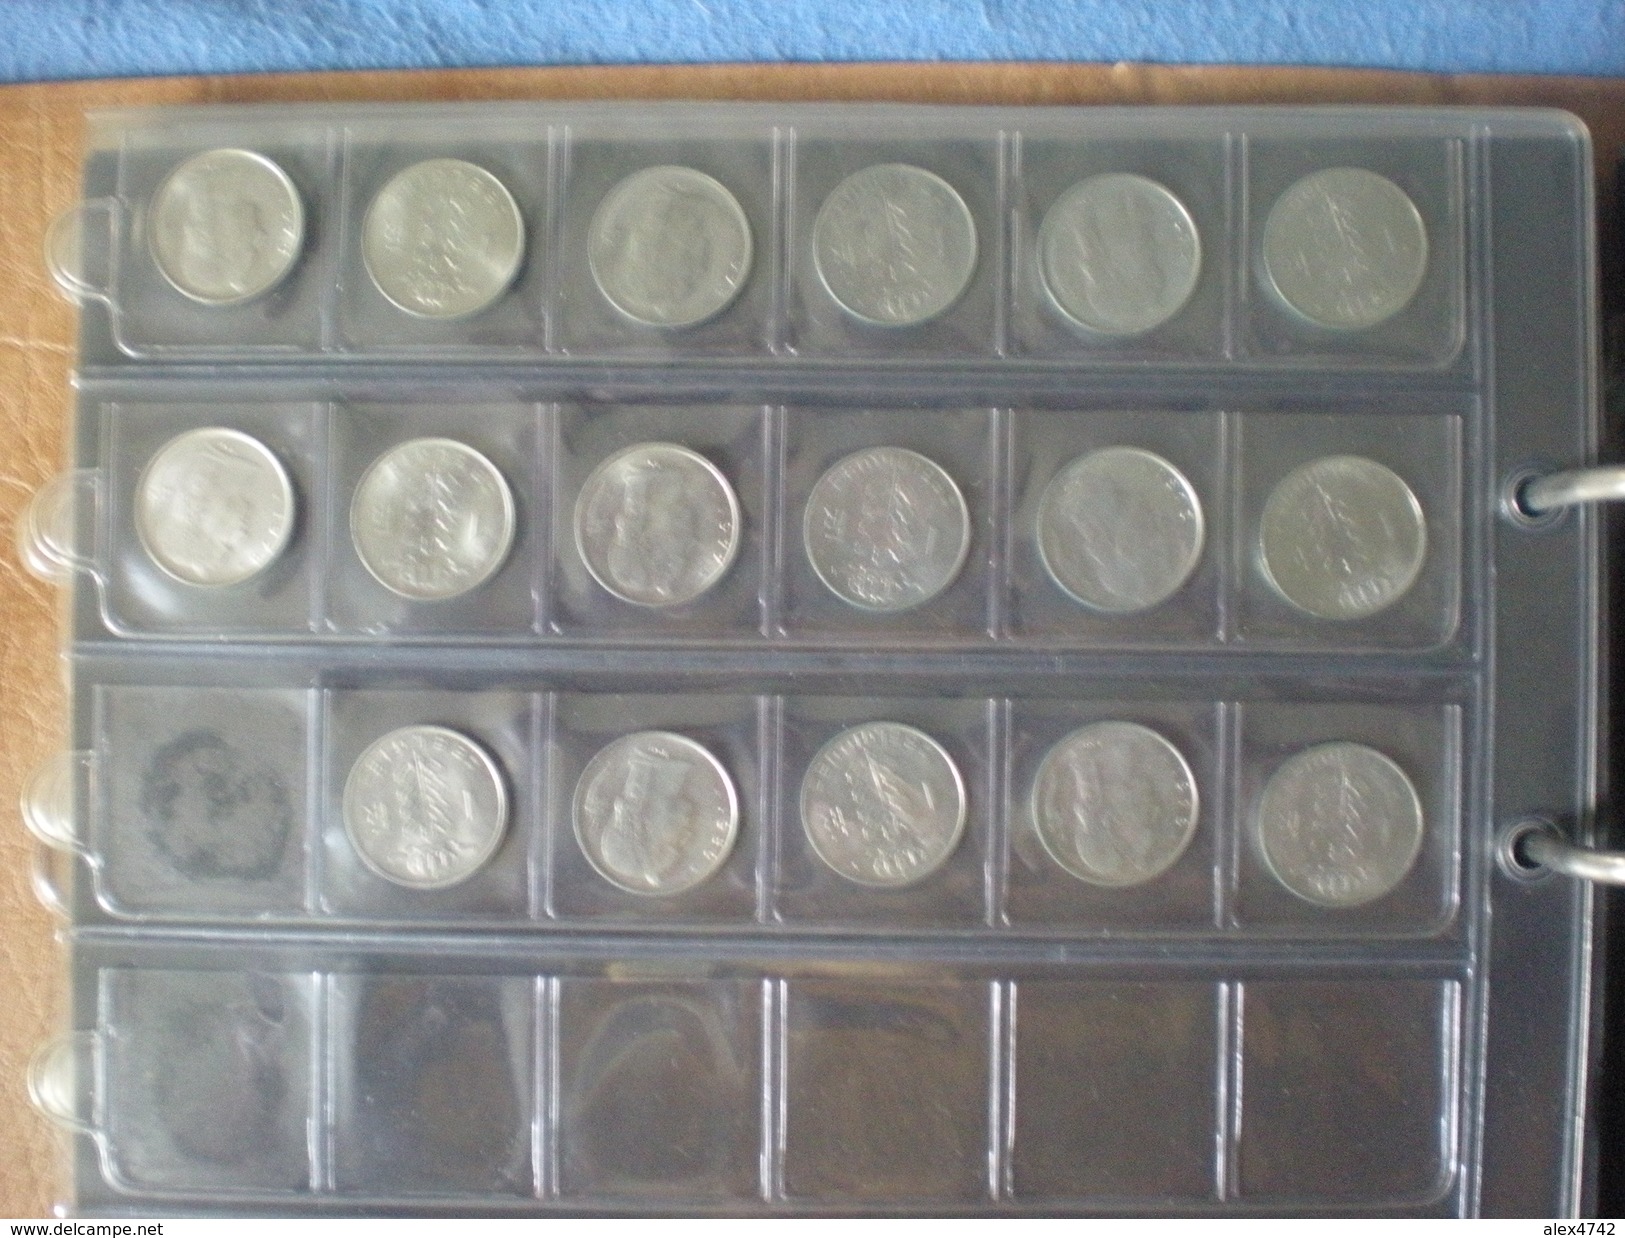 album de pièces belges, 48 X 25 c, 121 X 1 franc, 101 x 5 francs, 63 x 10 francs (album compris), détails sur demande